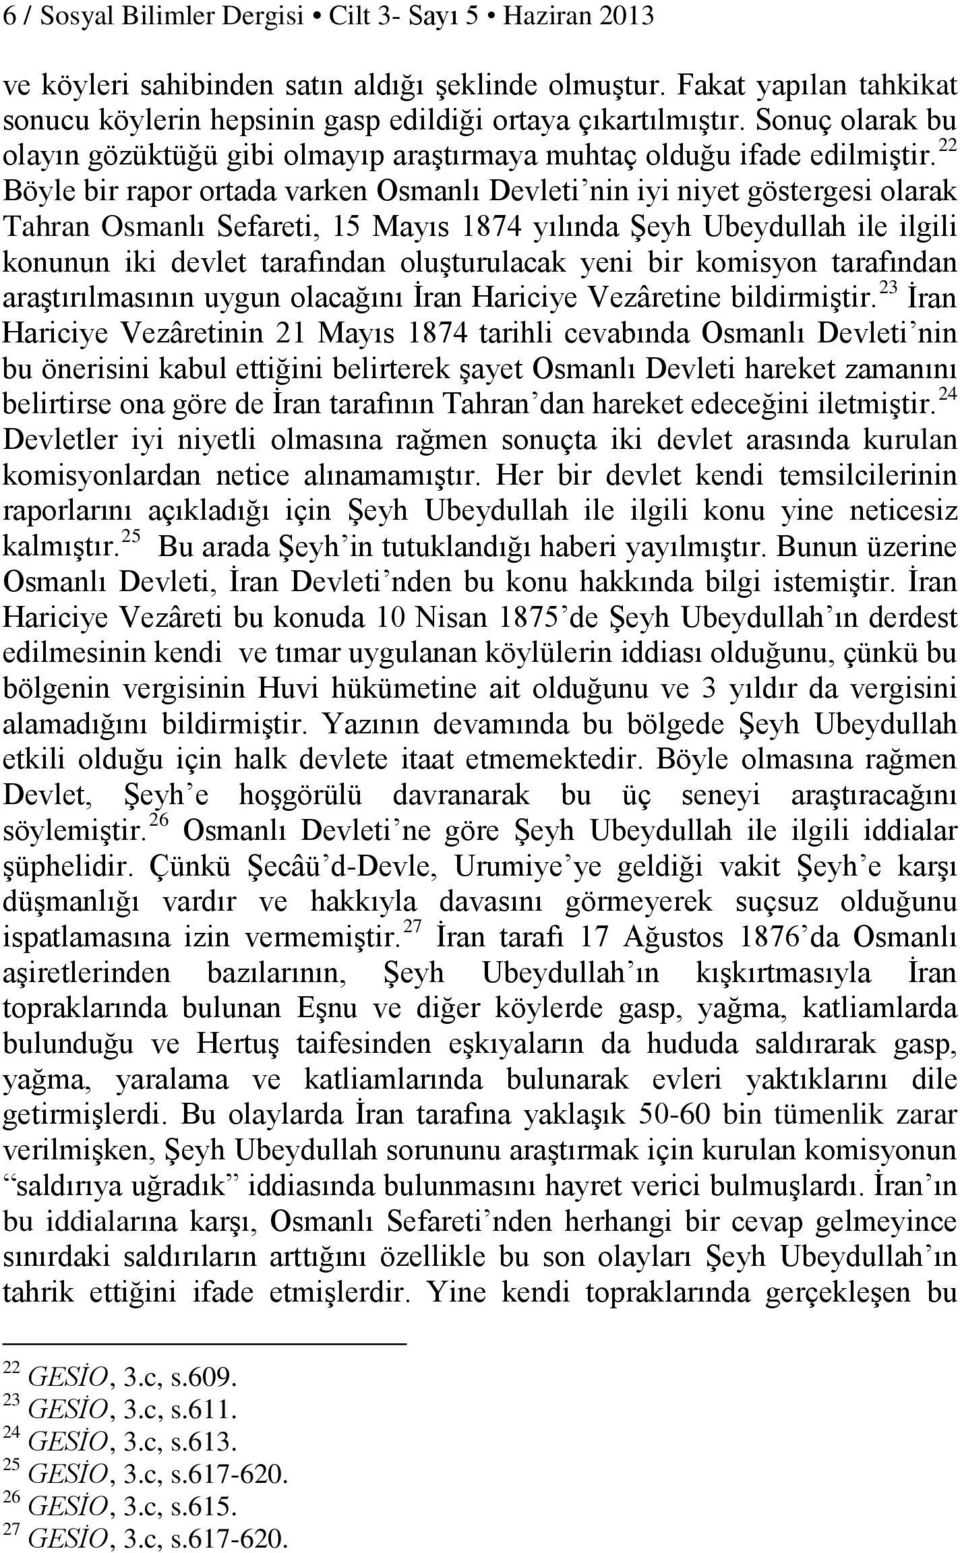 22 Böyle bir rapor ortada varken Osmanlı Devleti nin iyi niyet göstergesi olarak Tahran Osmanlı Sefareti, 15 Mayıs 1874 yılında Şeyh Ubeydullah ile ilgili konunun iki devlet tarafından oluşturulacak